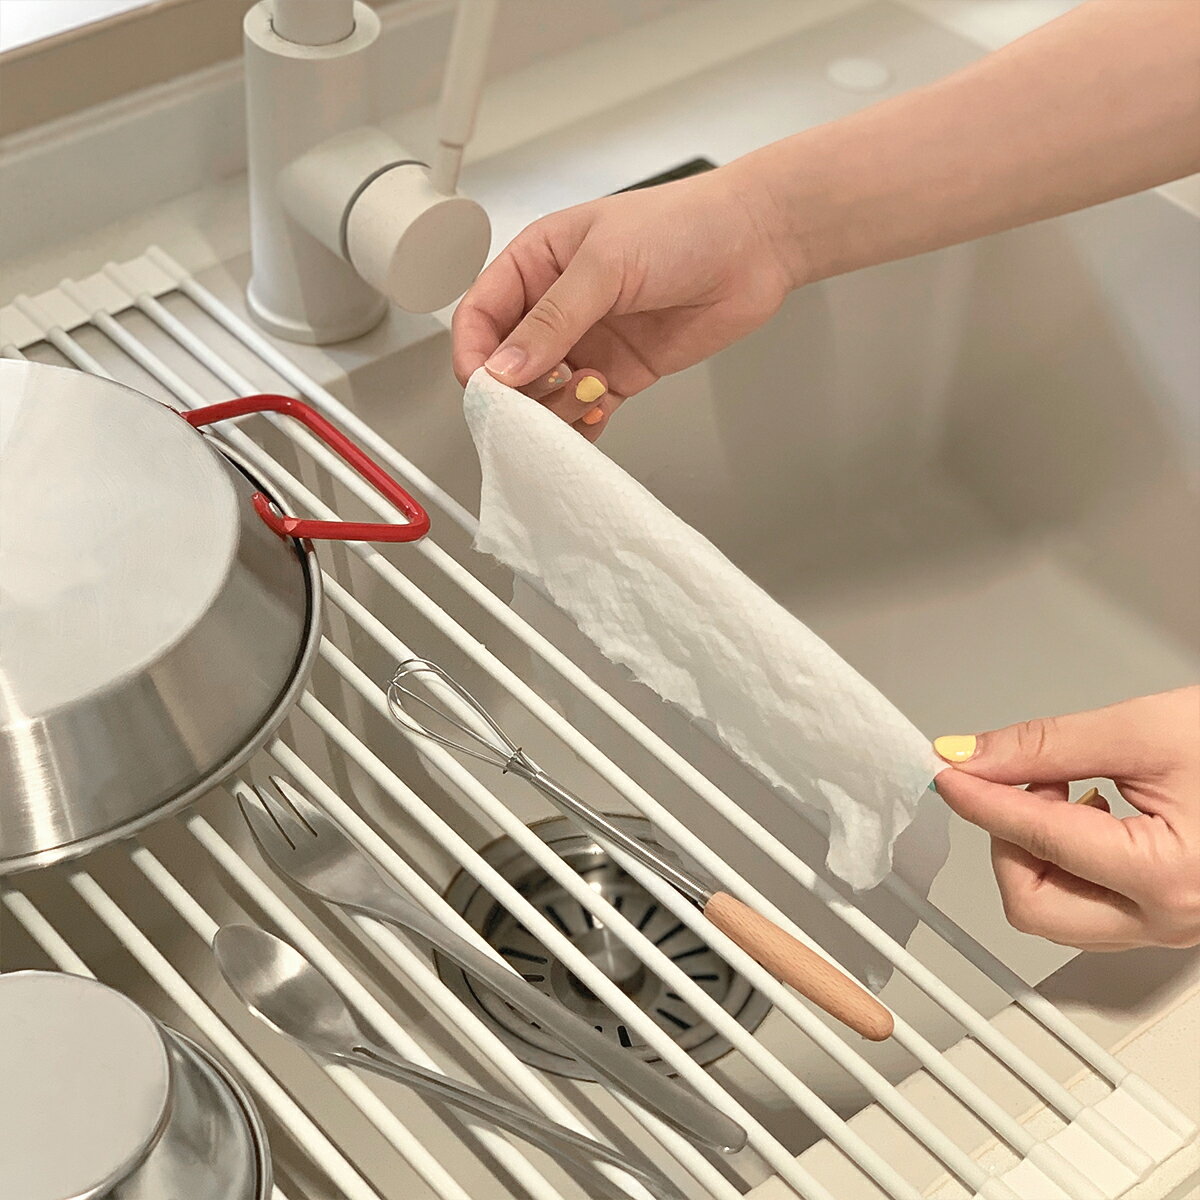 不鏽鋼砧板 菜板 砧板 家用廚房硅膠可折疊水槽瀝水架 碗碟收納置物架瀝水籃控水神器『cyd18434』